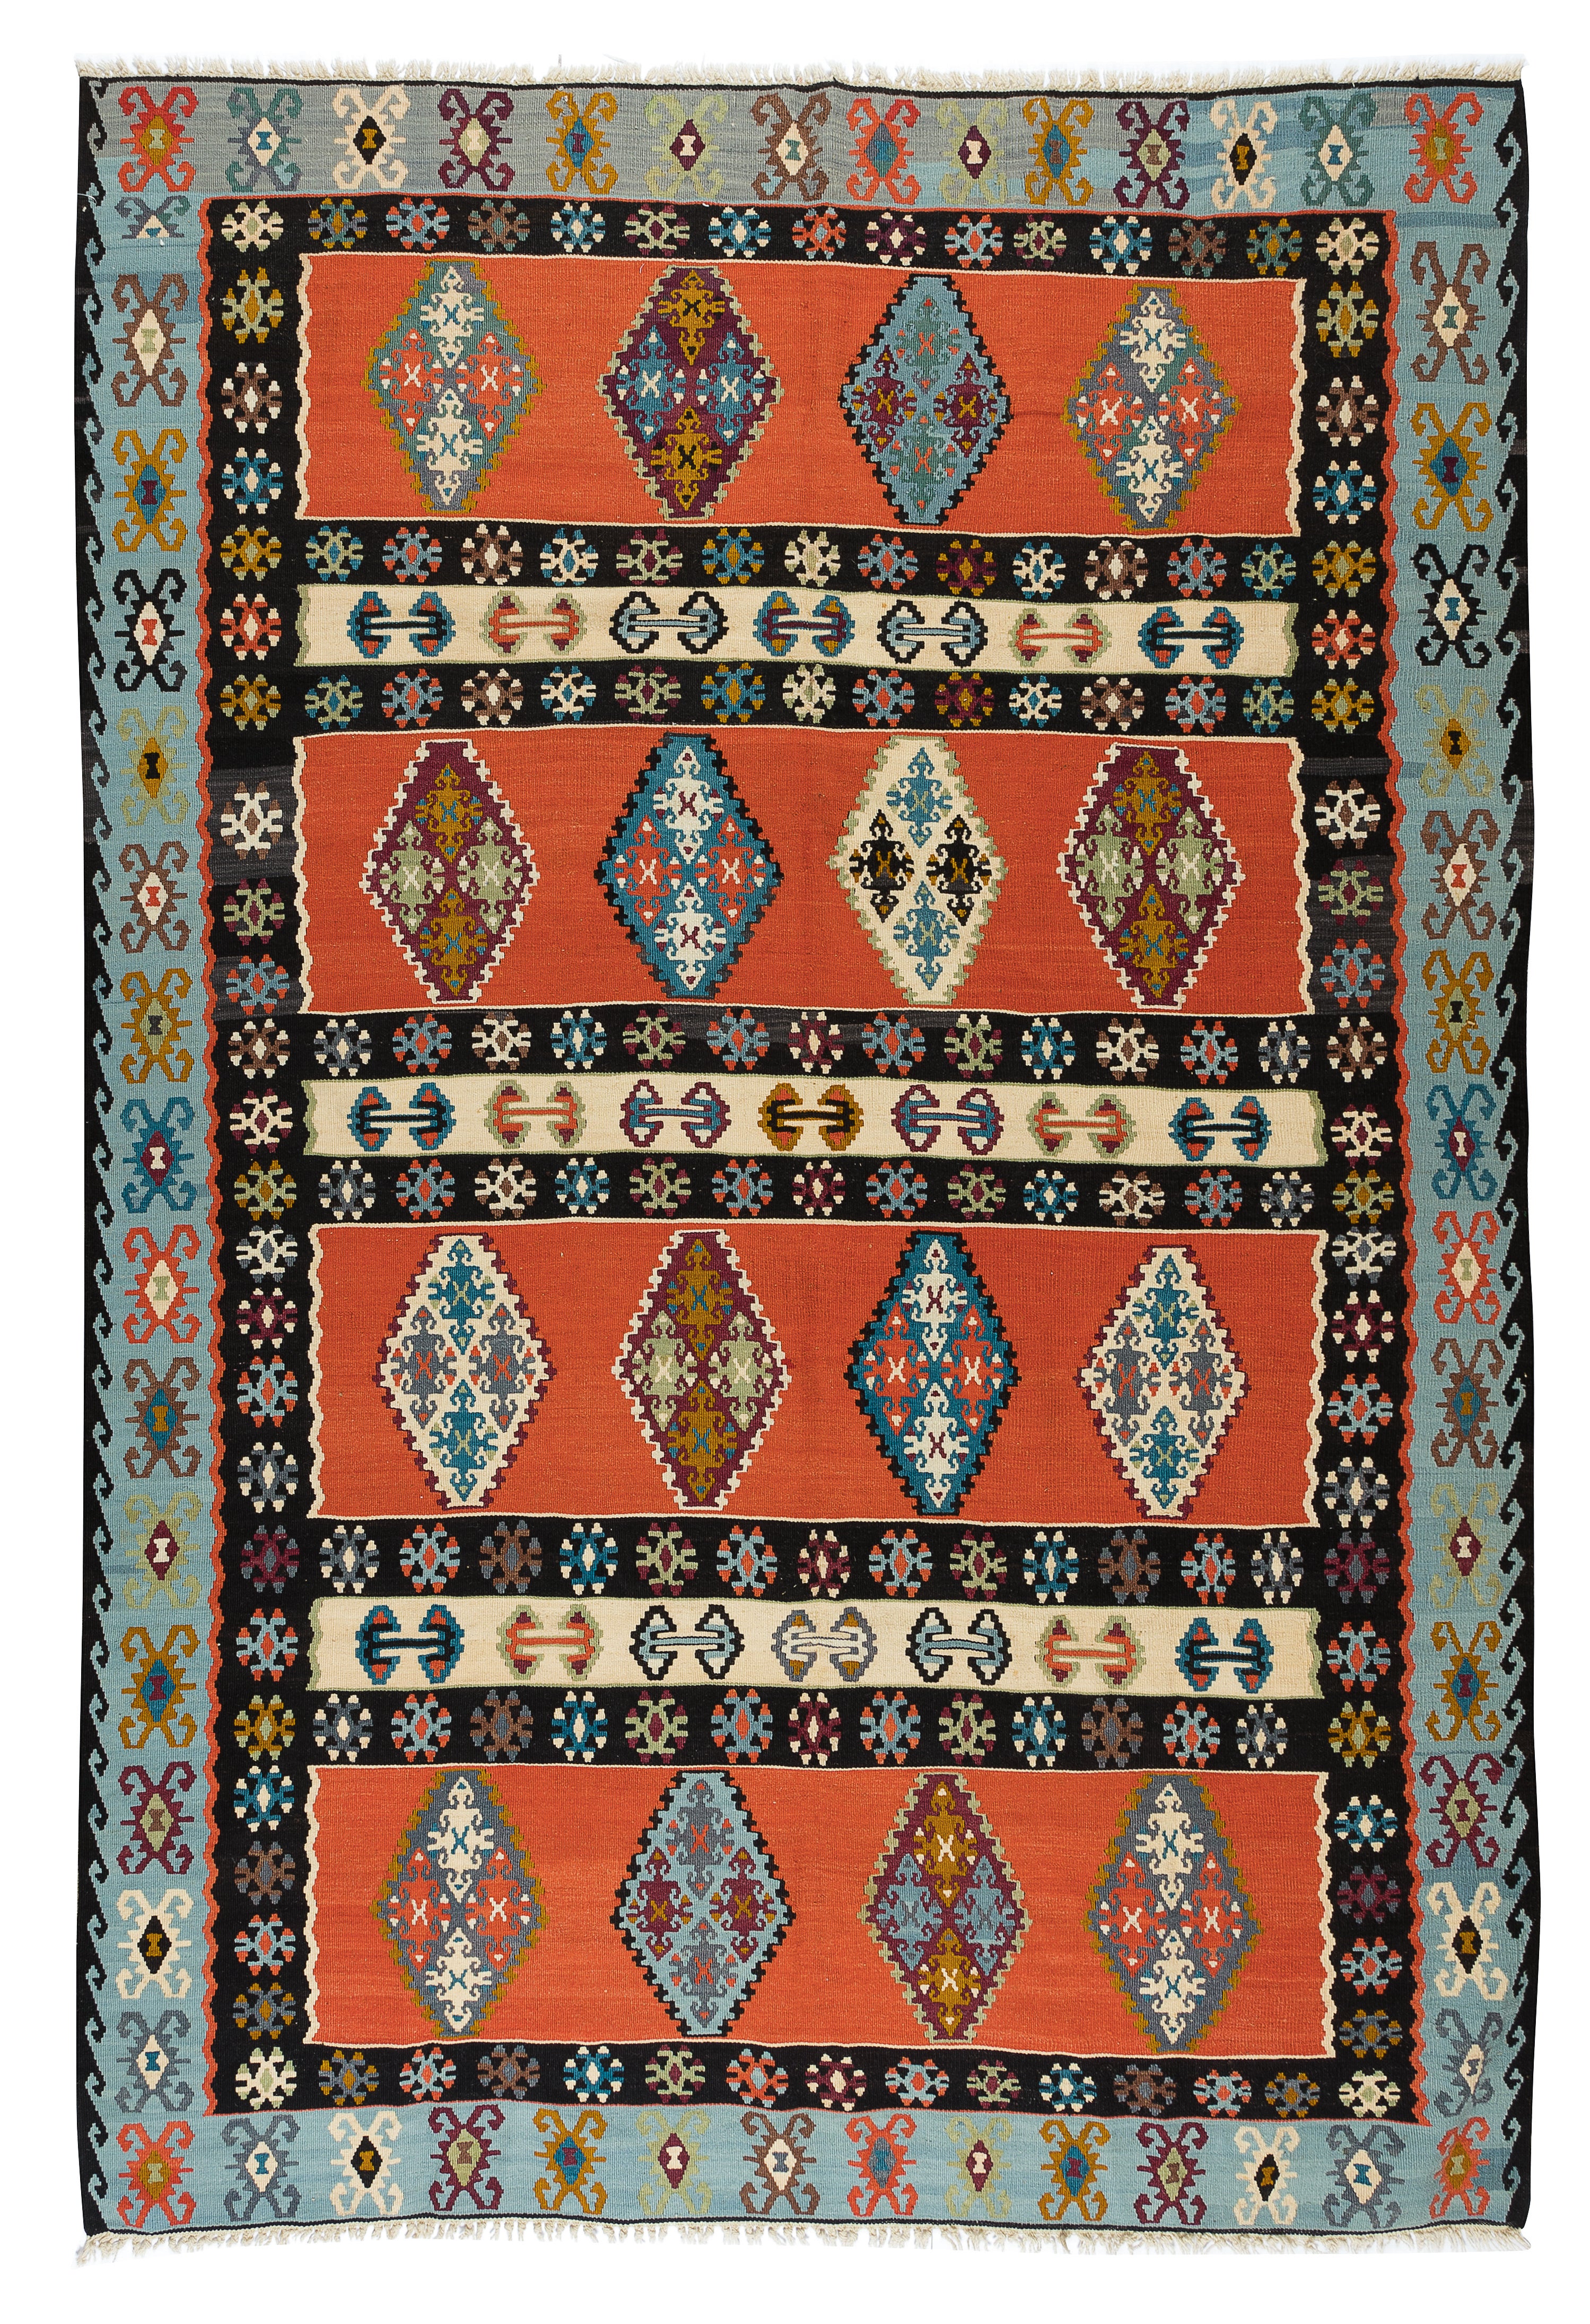 Alfombra Kilim turca tejida a mano con motivos geométricos vintage, roja y azul, de 7x9,8 pies